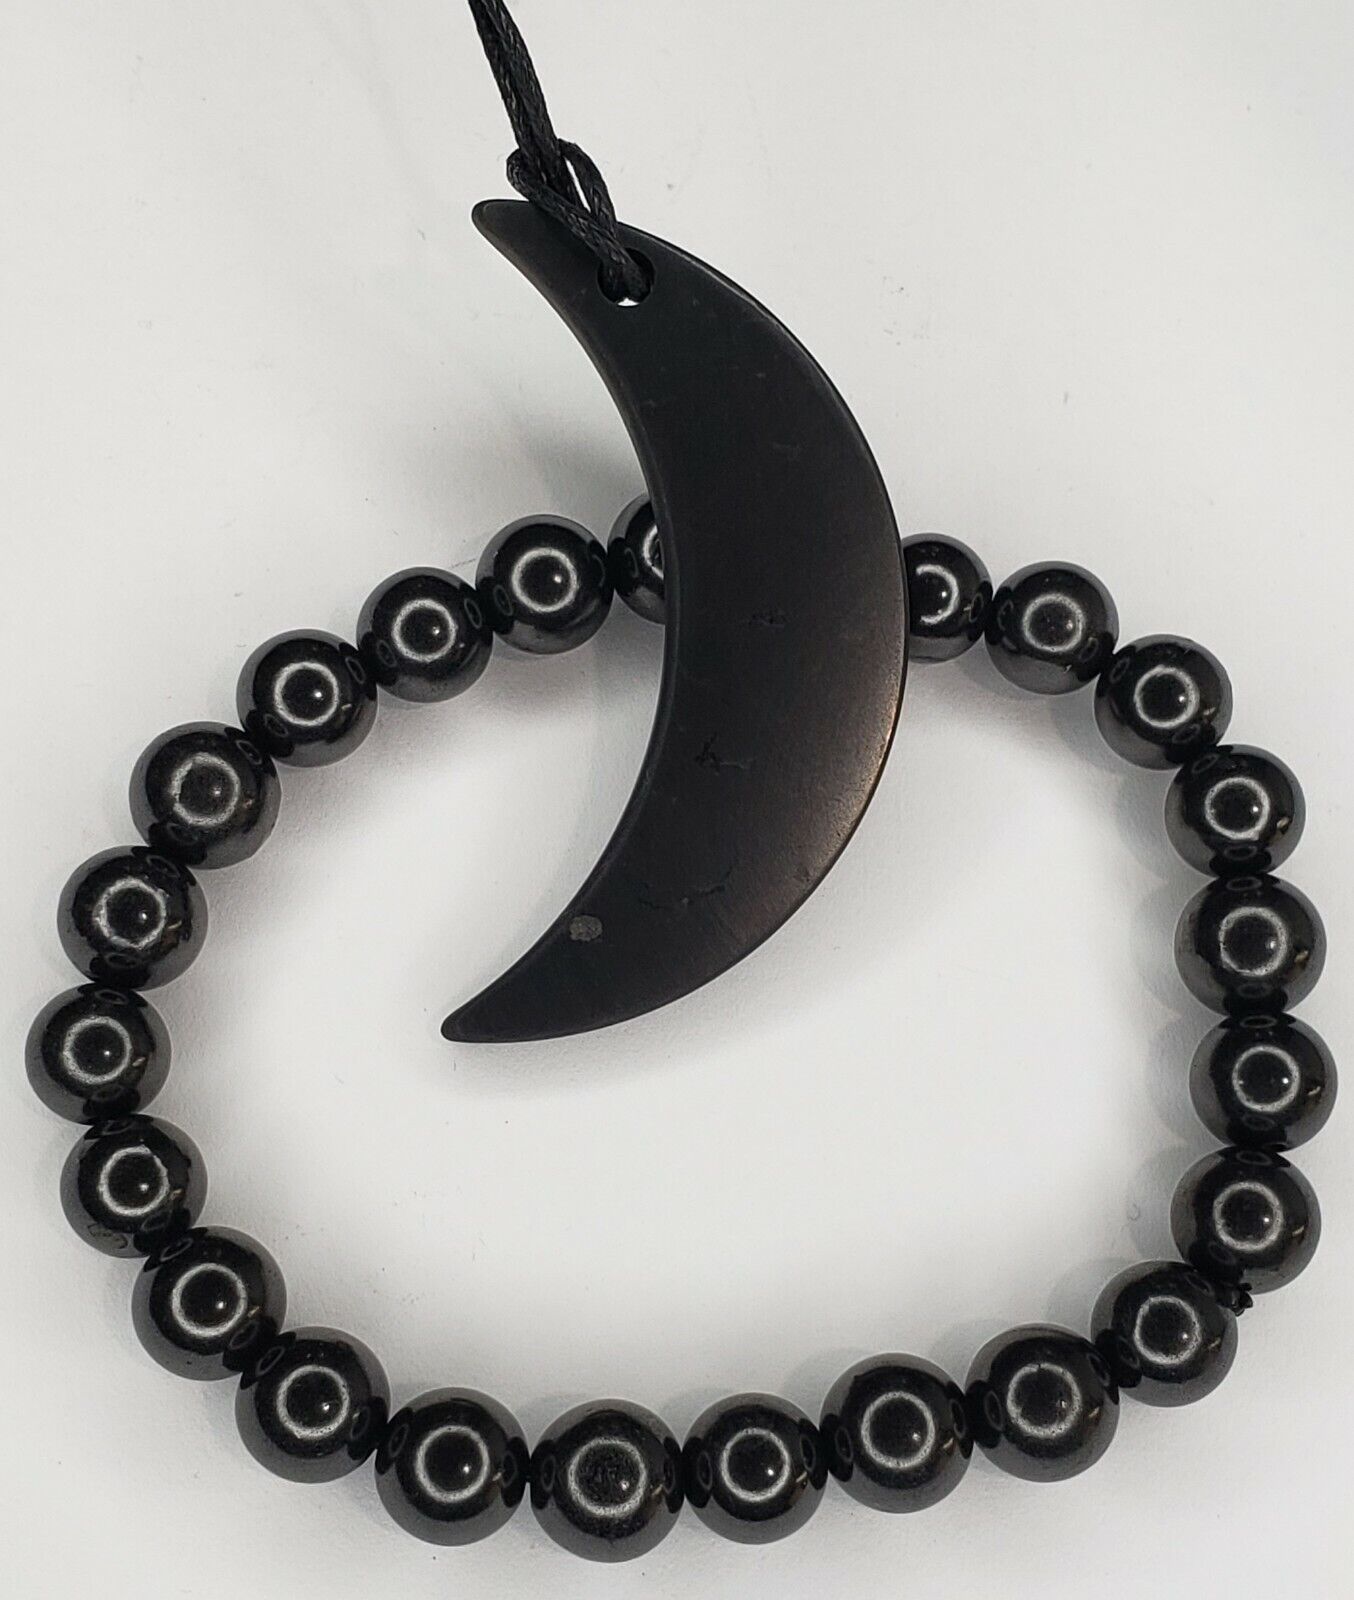 Shungite Set 007 - 8 mm Bracelet 1 pc + Shungite Pendant Crescent Moon 1 pc